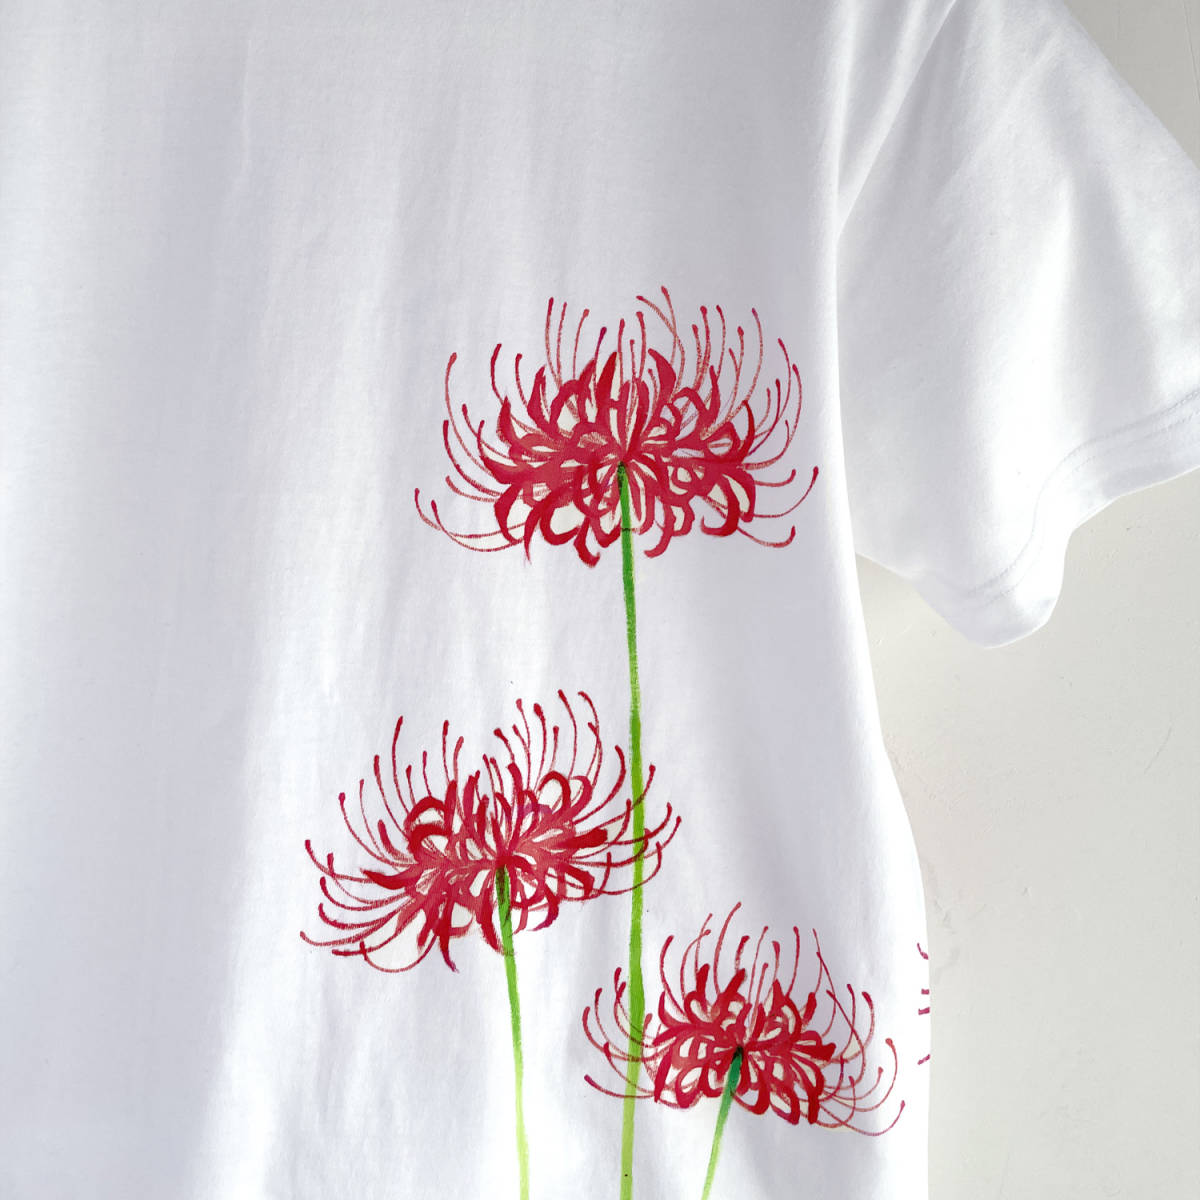 メンズ Tシャツ XXLサイズ 彼岸花柄Tシャツ 白 ハンドメイド 手描きTシャツ 和柄 花柄 秋冬